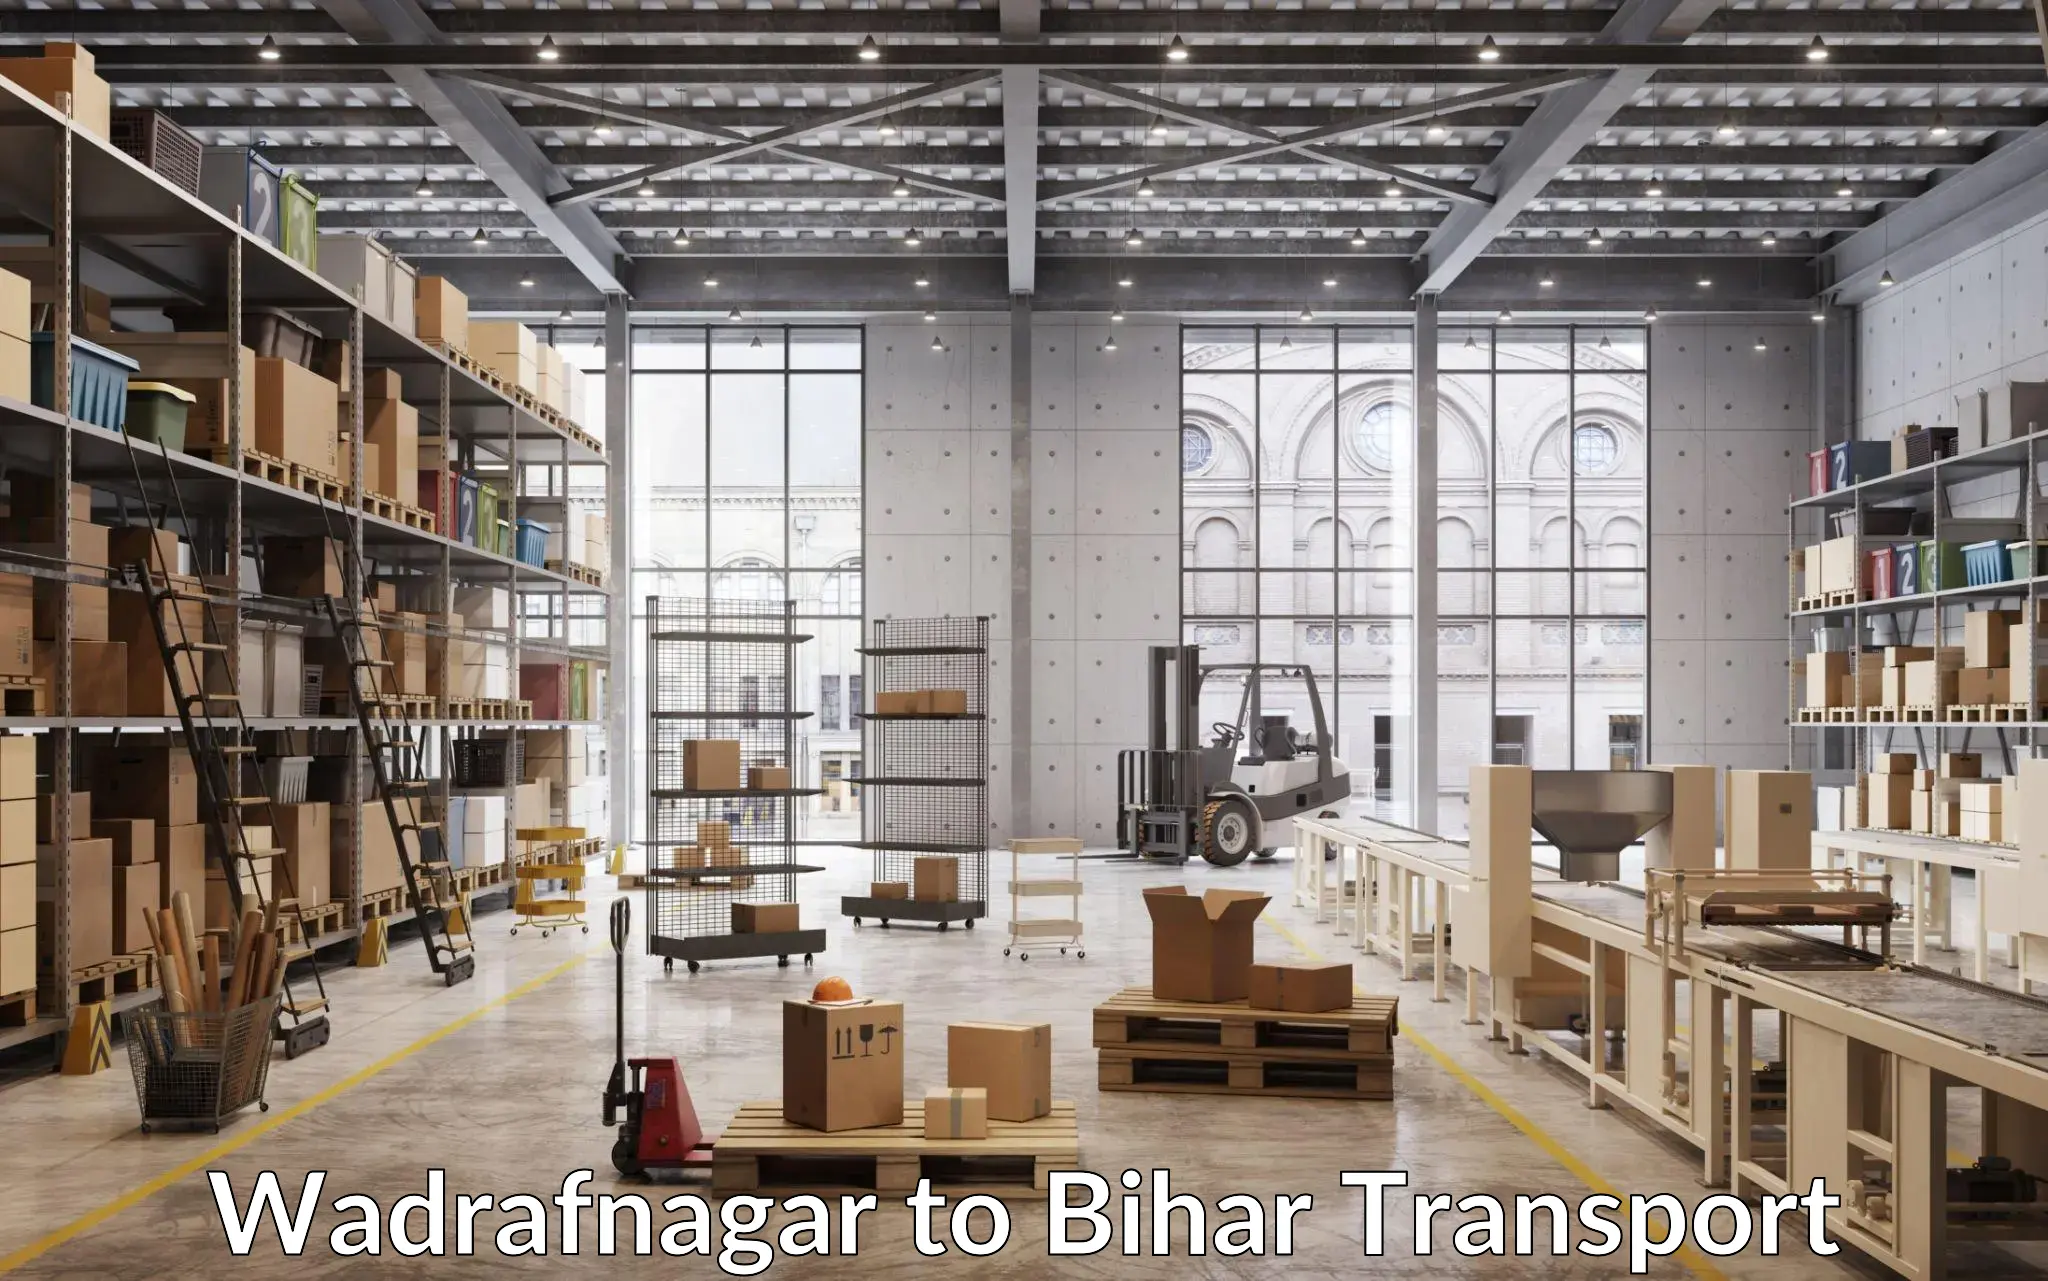 Interstate transport services Wadrafnagar to Kishunganj